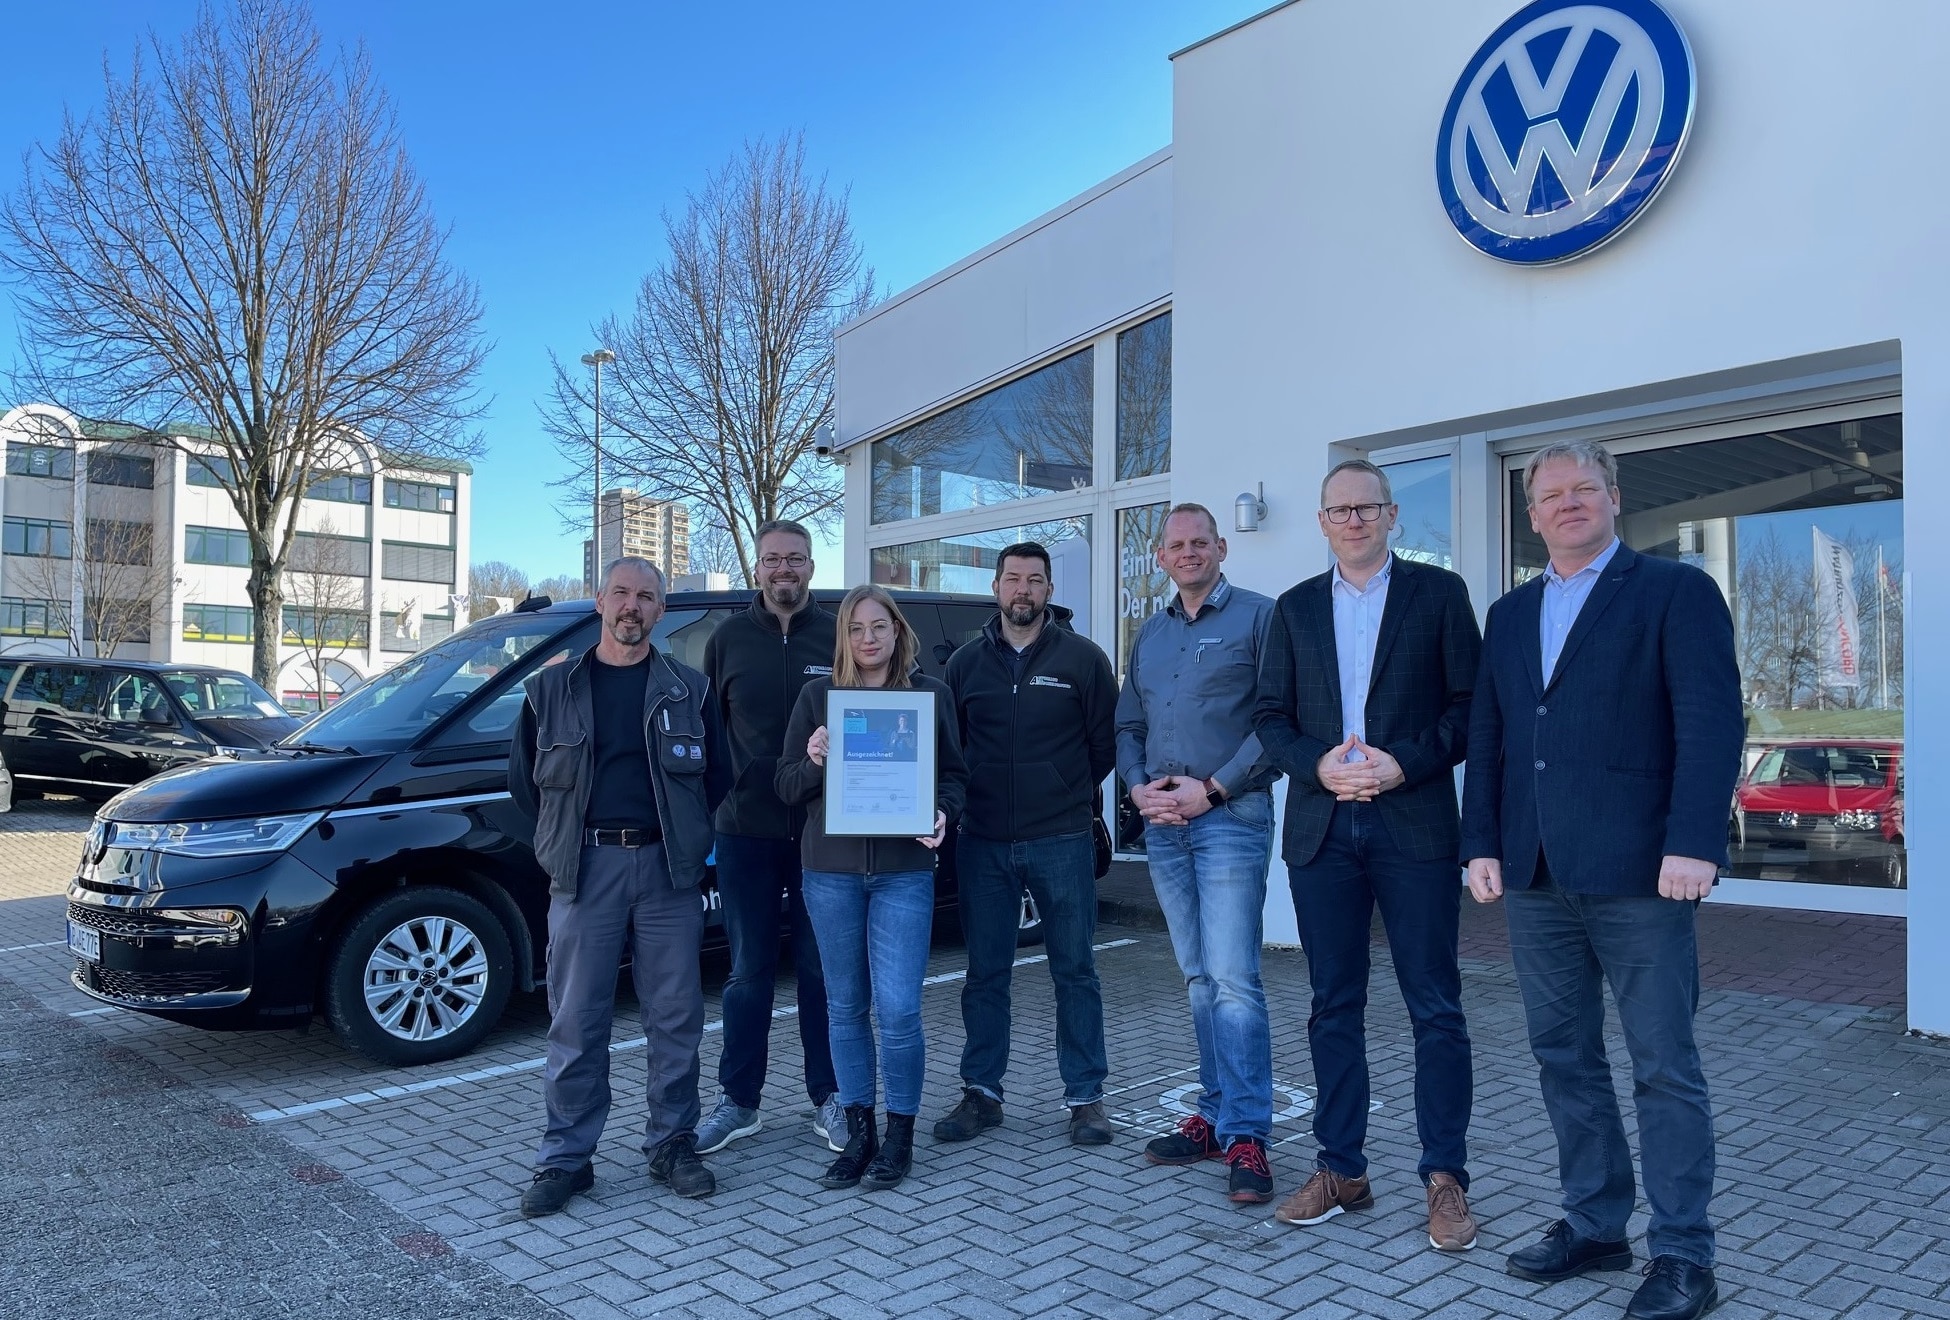 Stellvertretend für das gesamte Autohaus Eschengrund Verkaufsteam bedanken sich Verkäufer Sven Polzin (links) und Remo Schulze (rechts) für die zahlreichen exzellenten Käuferbewertungen bei AutoScout24.